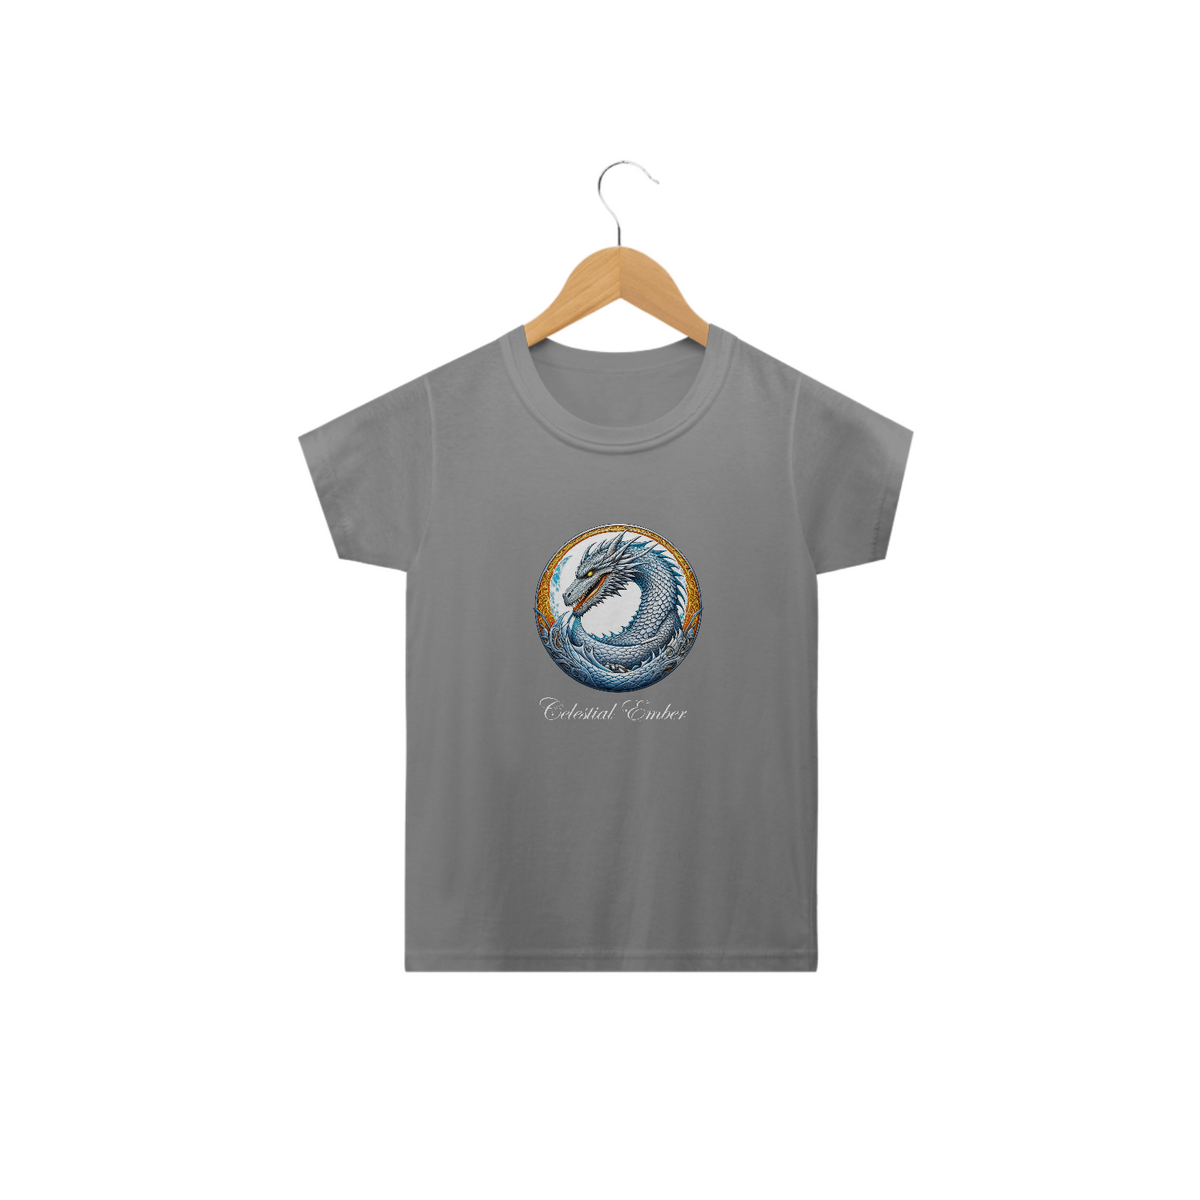 Nome do produto: Camiseta Infantil - Coleção Still Dragon - Celestial Ember